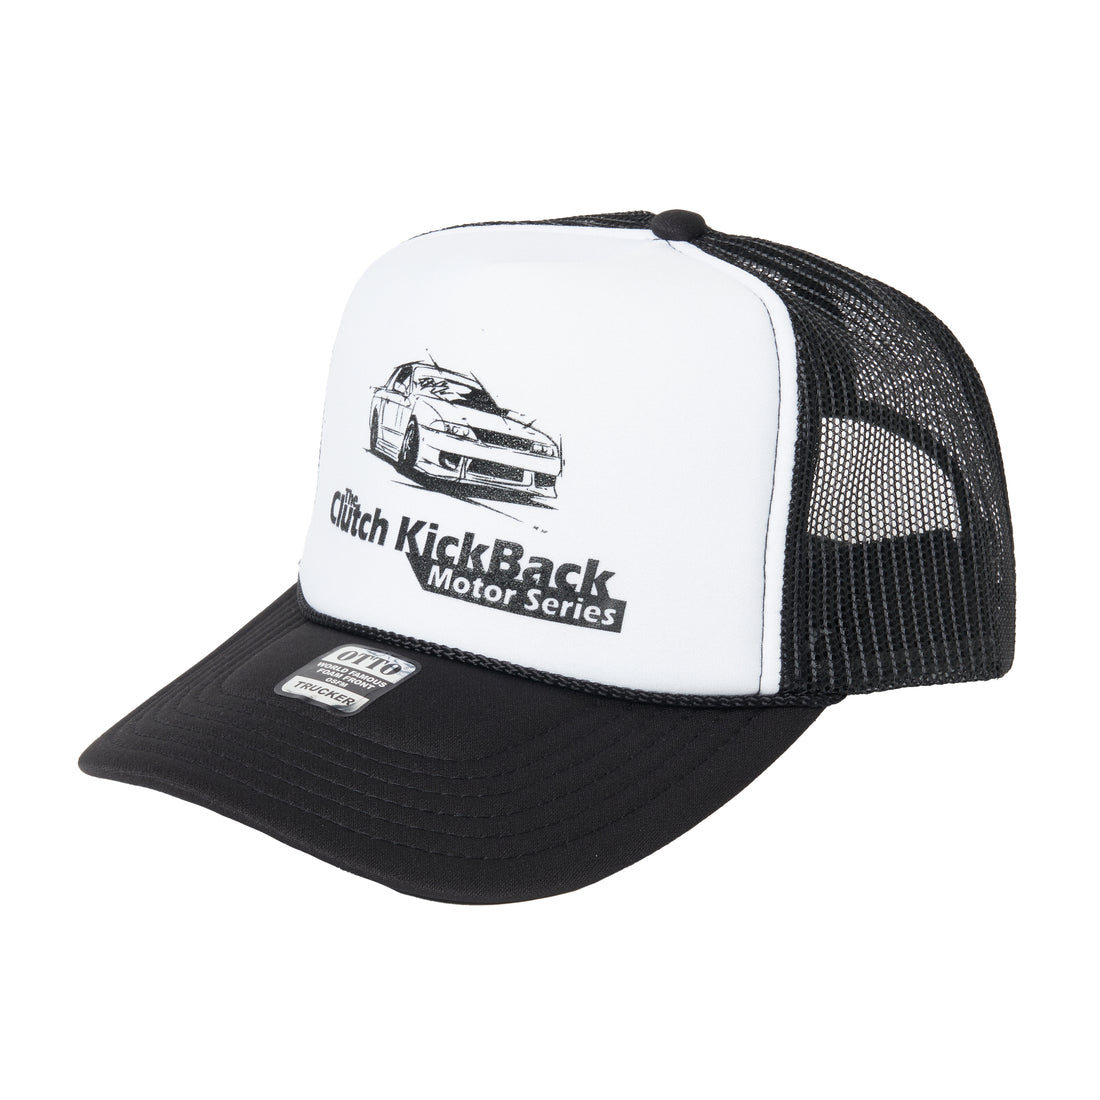 The Clutch Kickback "2024 Series" Hat